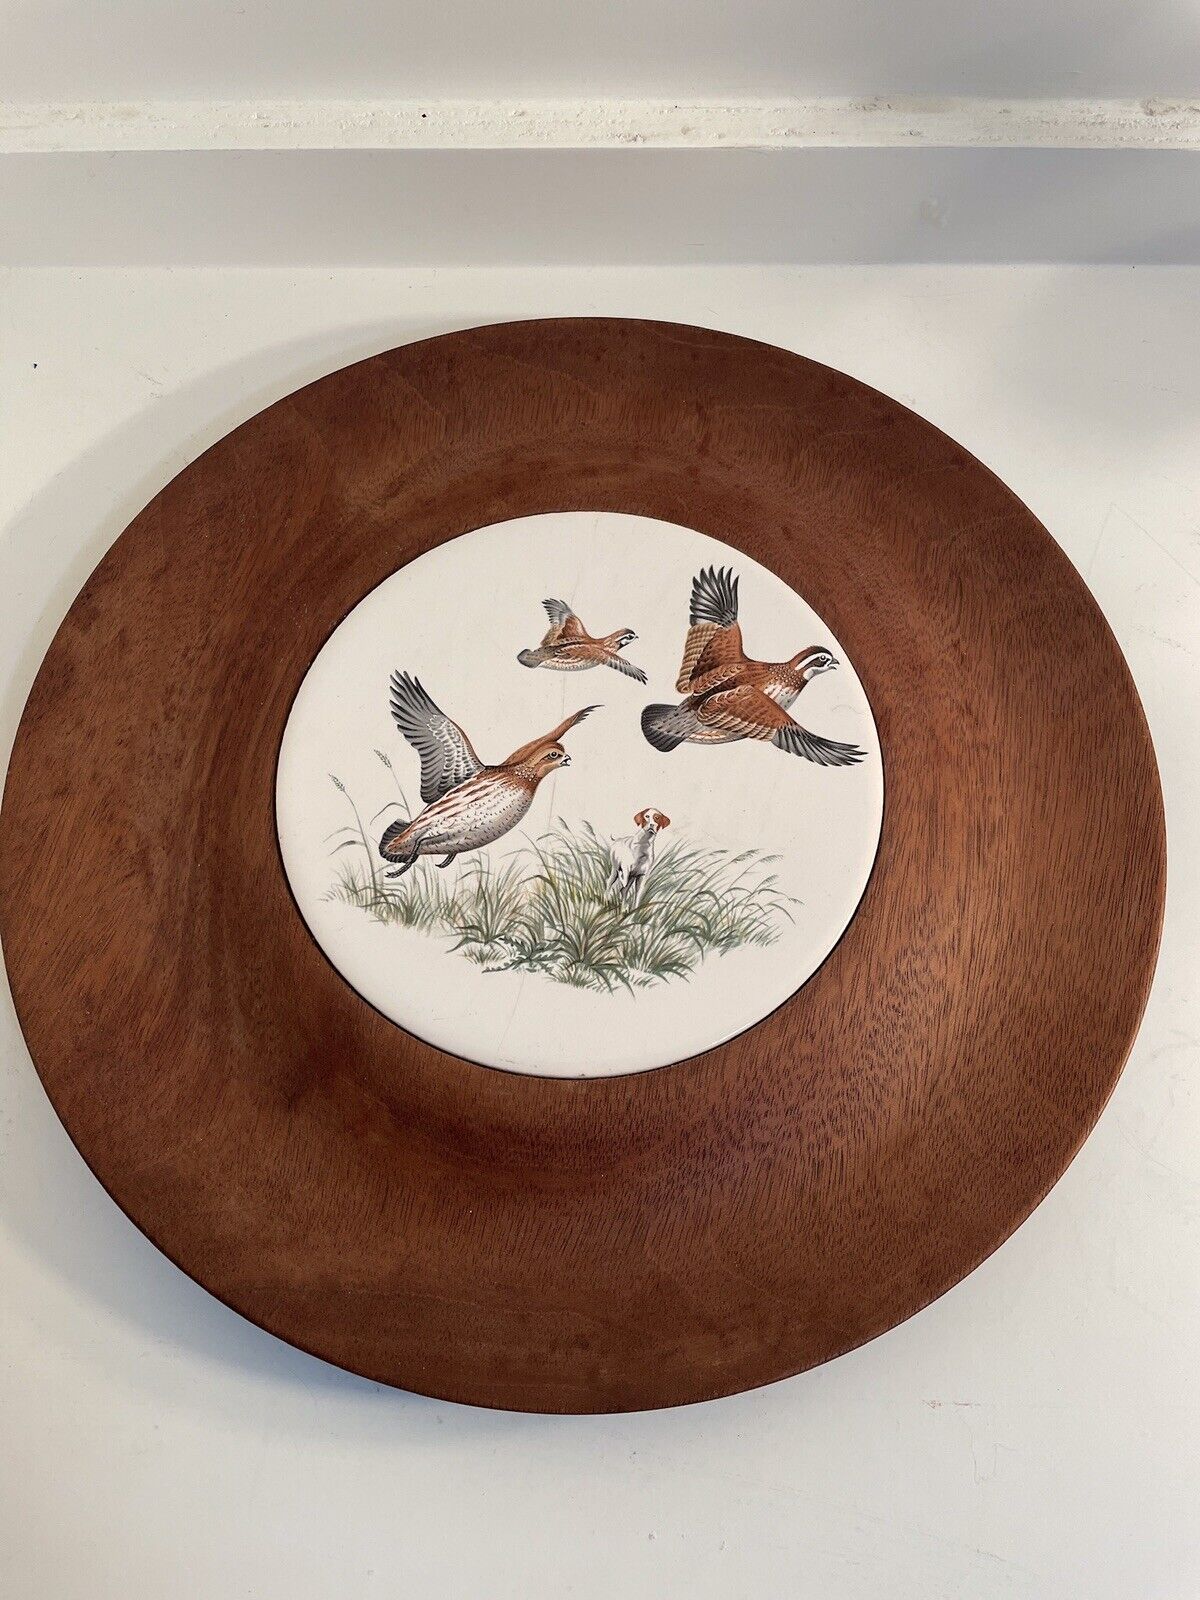 Vintage Woodbury's Woodware Walnut Platter w/ Ceramic Mallard Duck Trivet